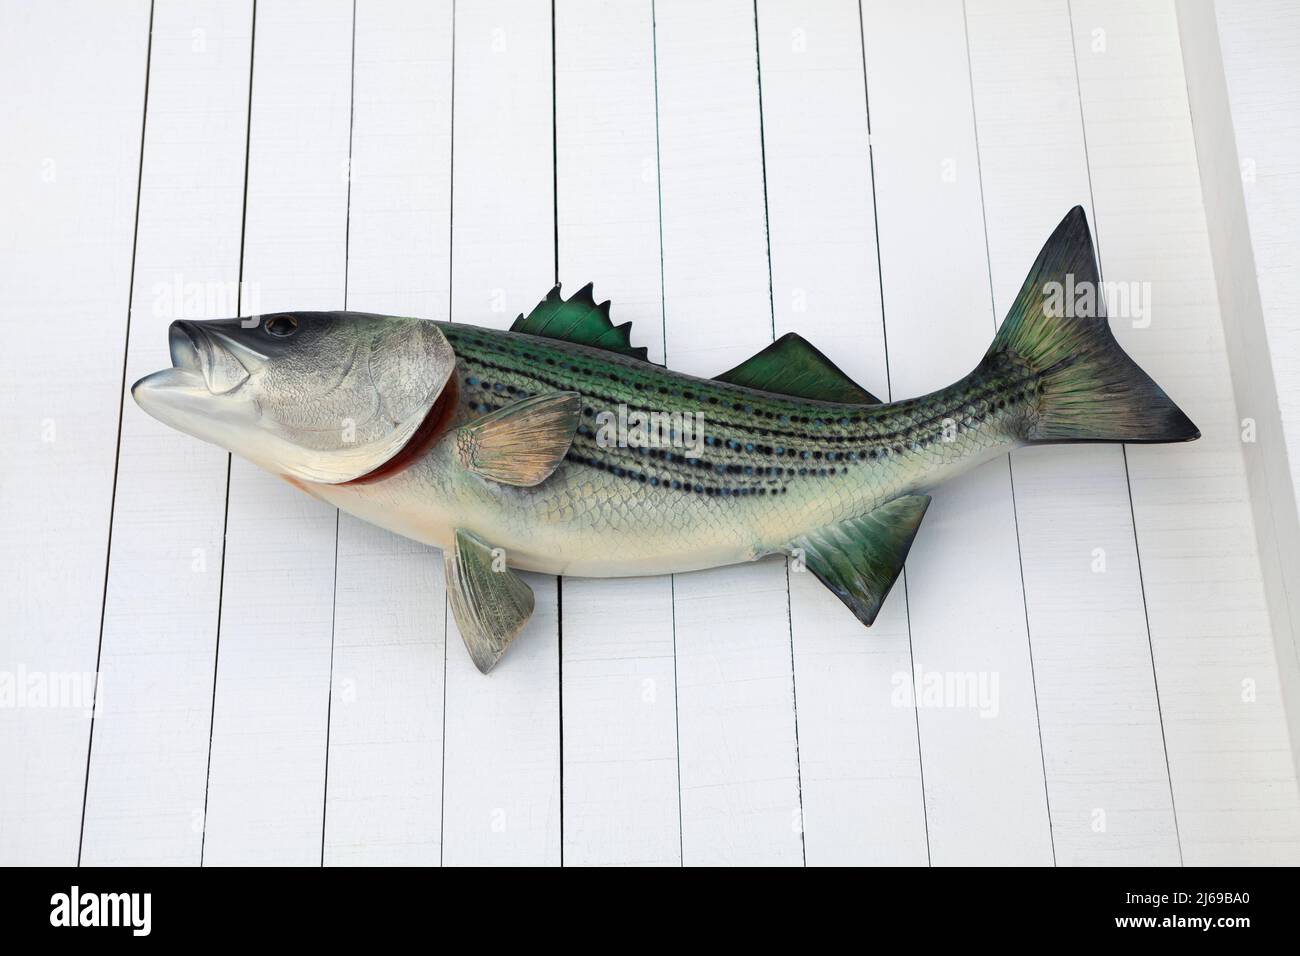 Modello di pesce sul muro., artificiale o modello di pesce finto appeso sul muro di legno di colore bianco, decorazione per la bellezza Foto Stock